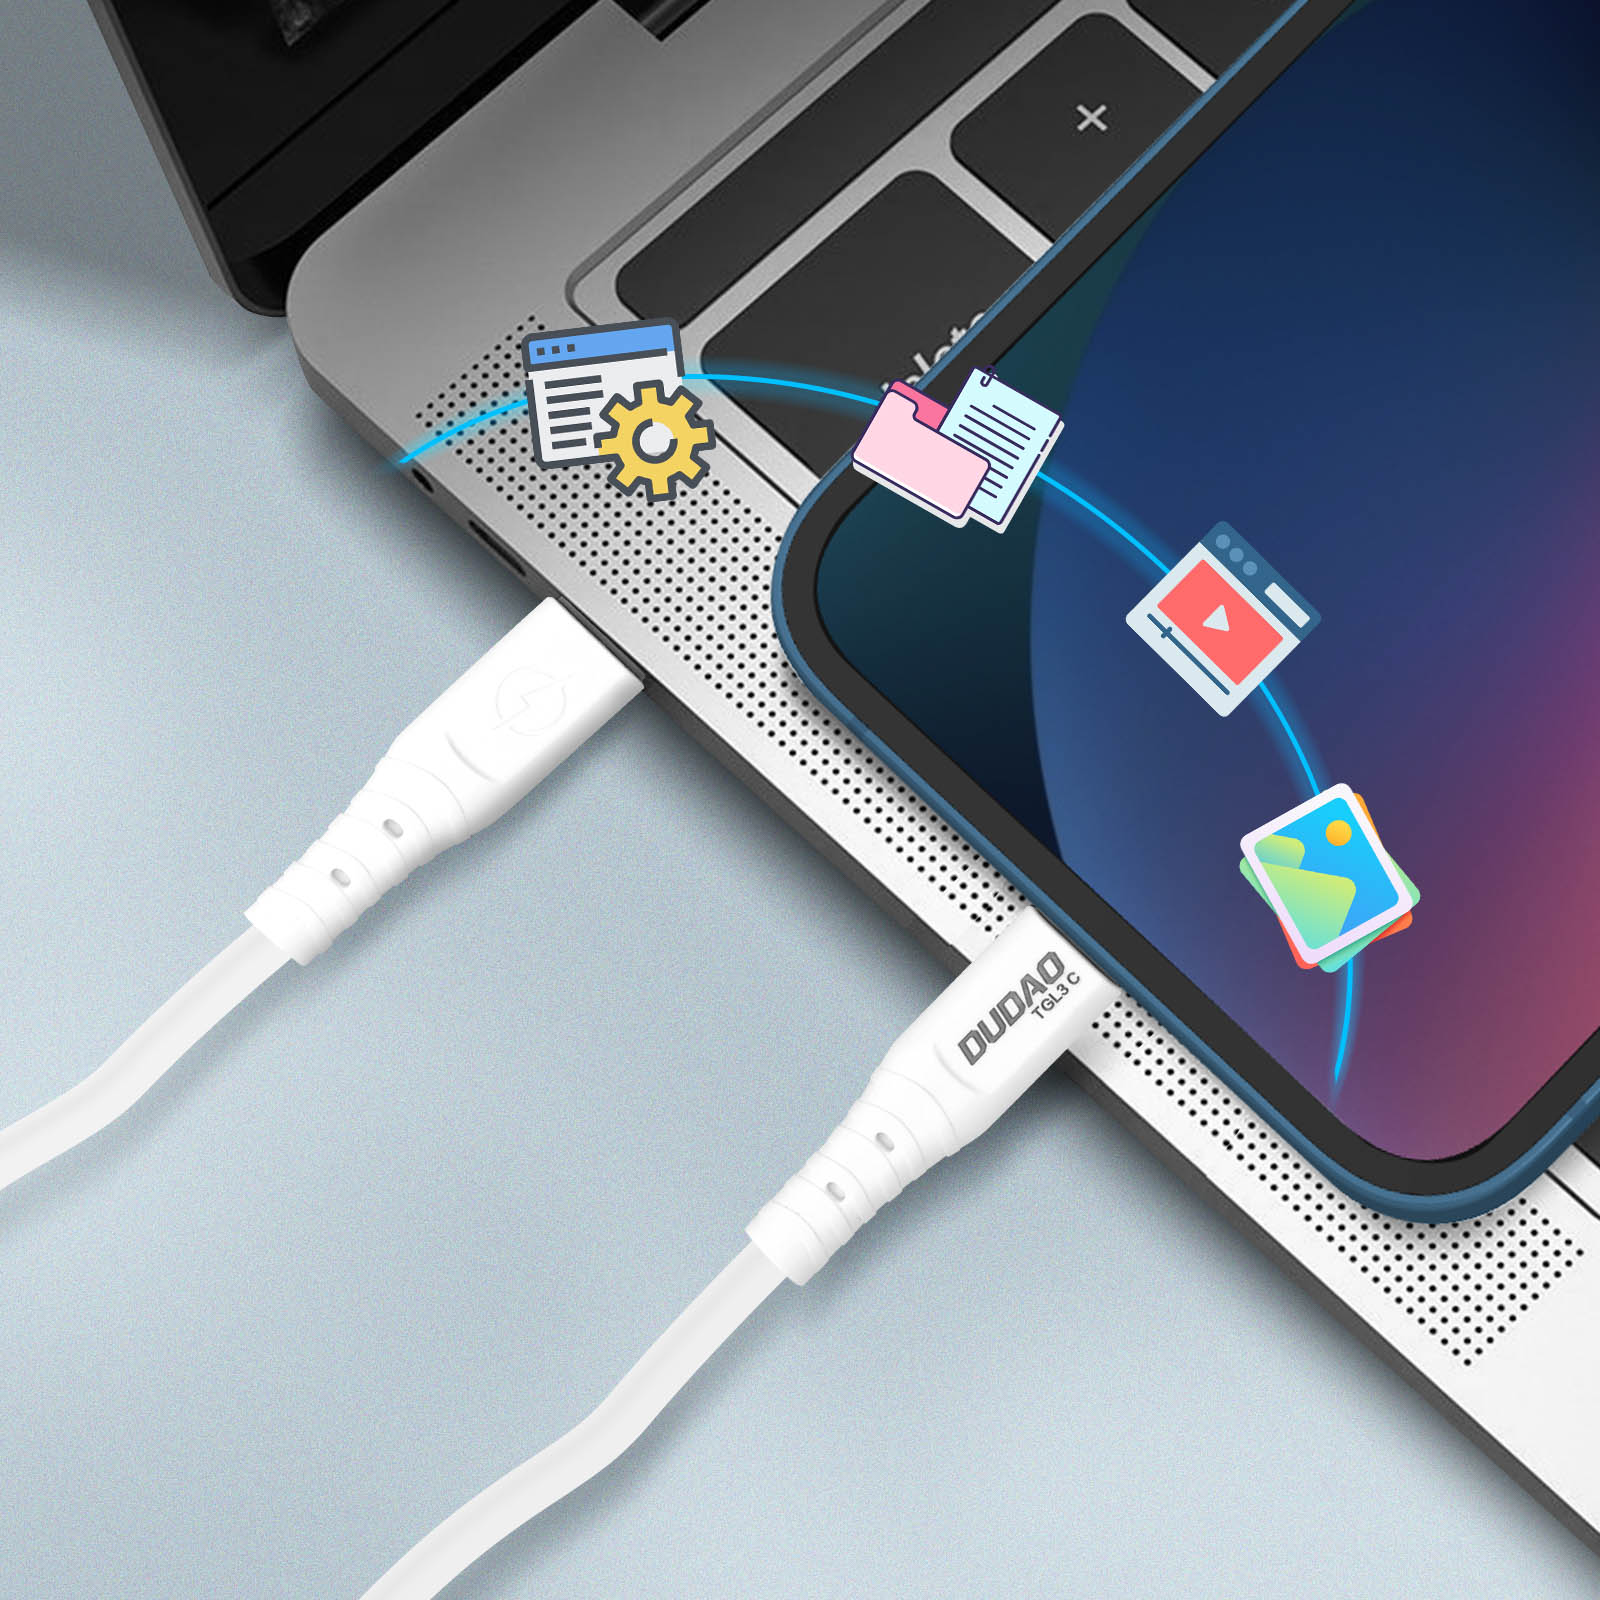 DUDAO USB-C und für 65W Kabel iPad USB-Kabel iPhone